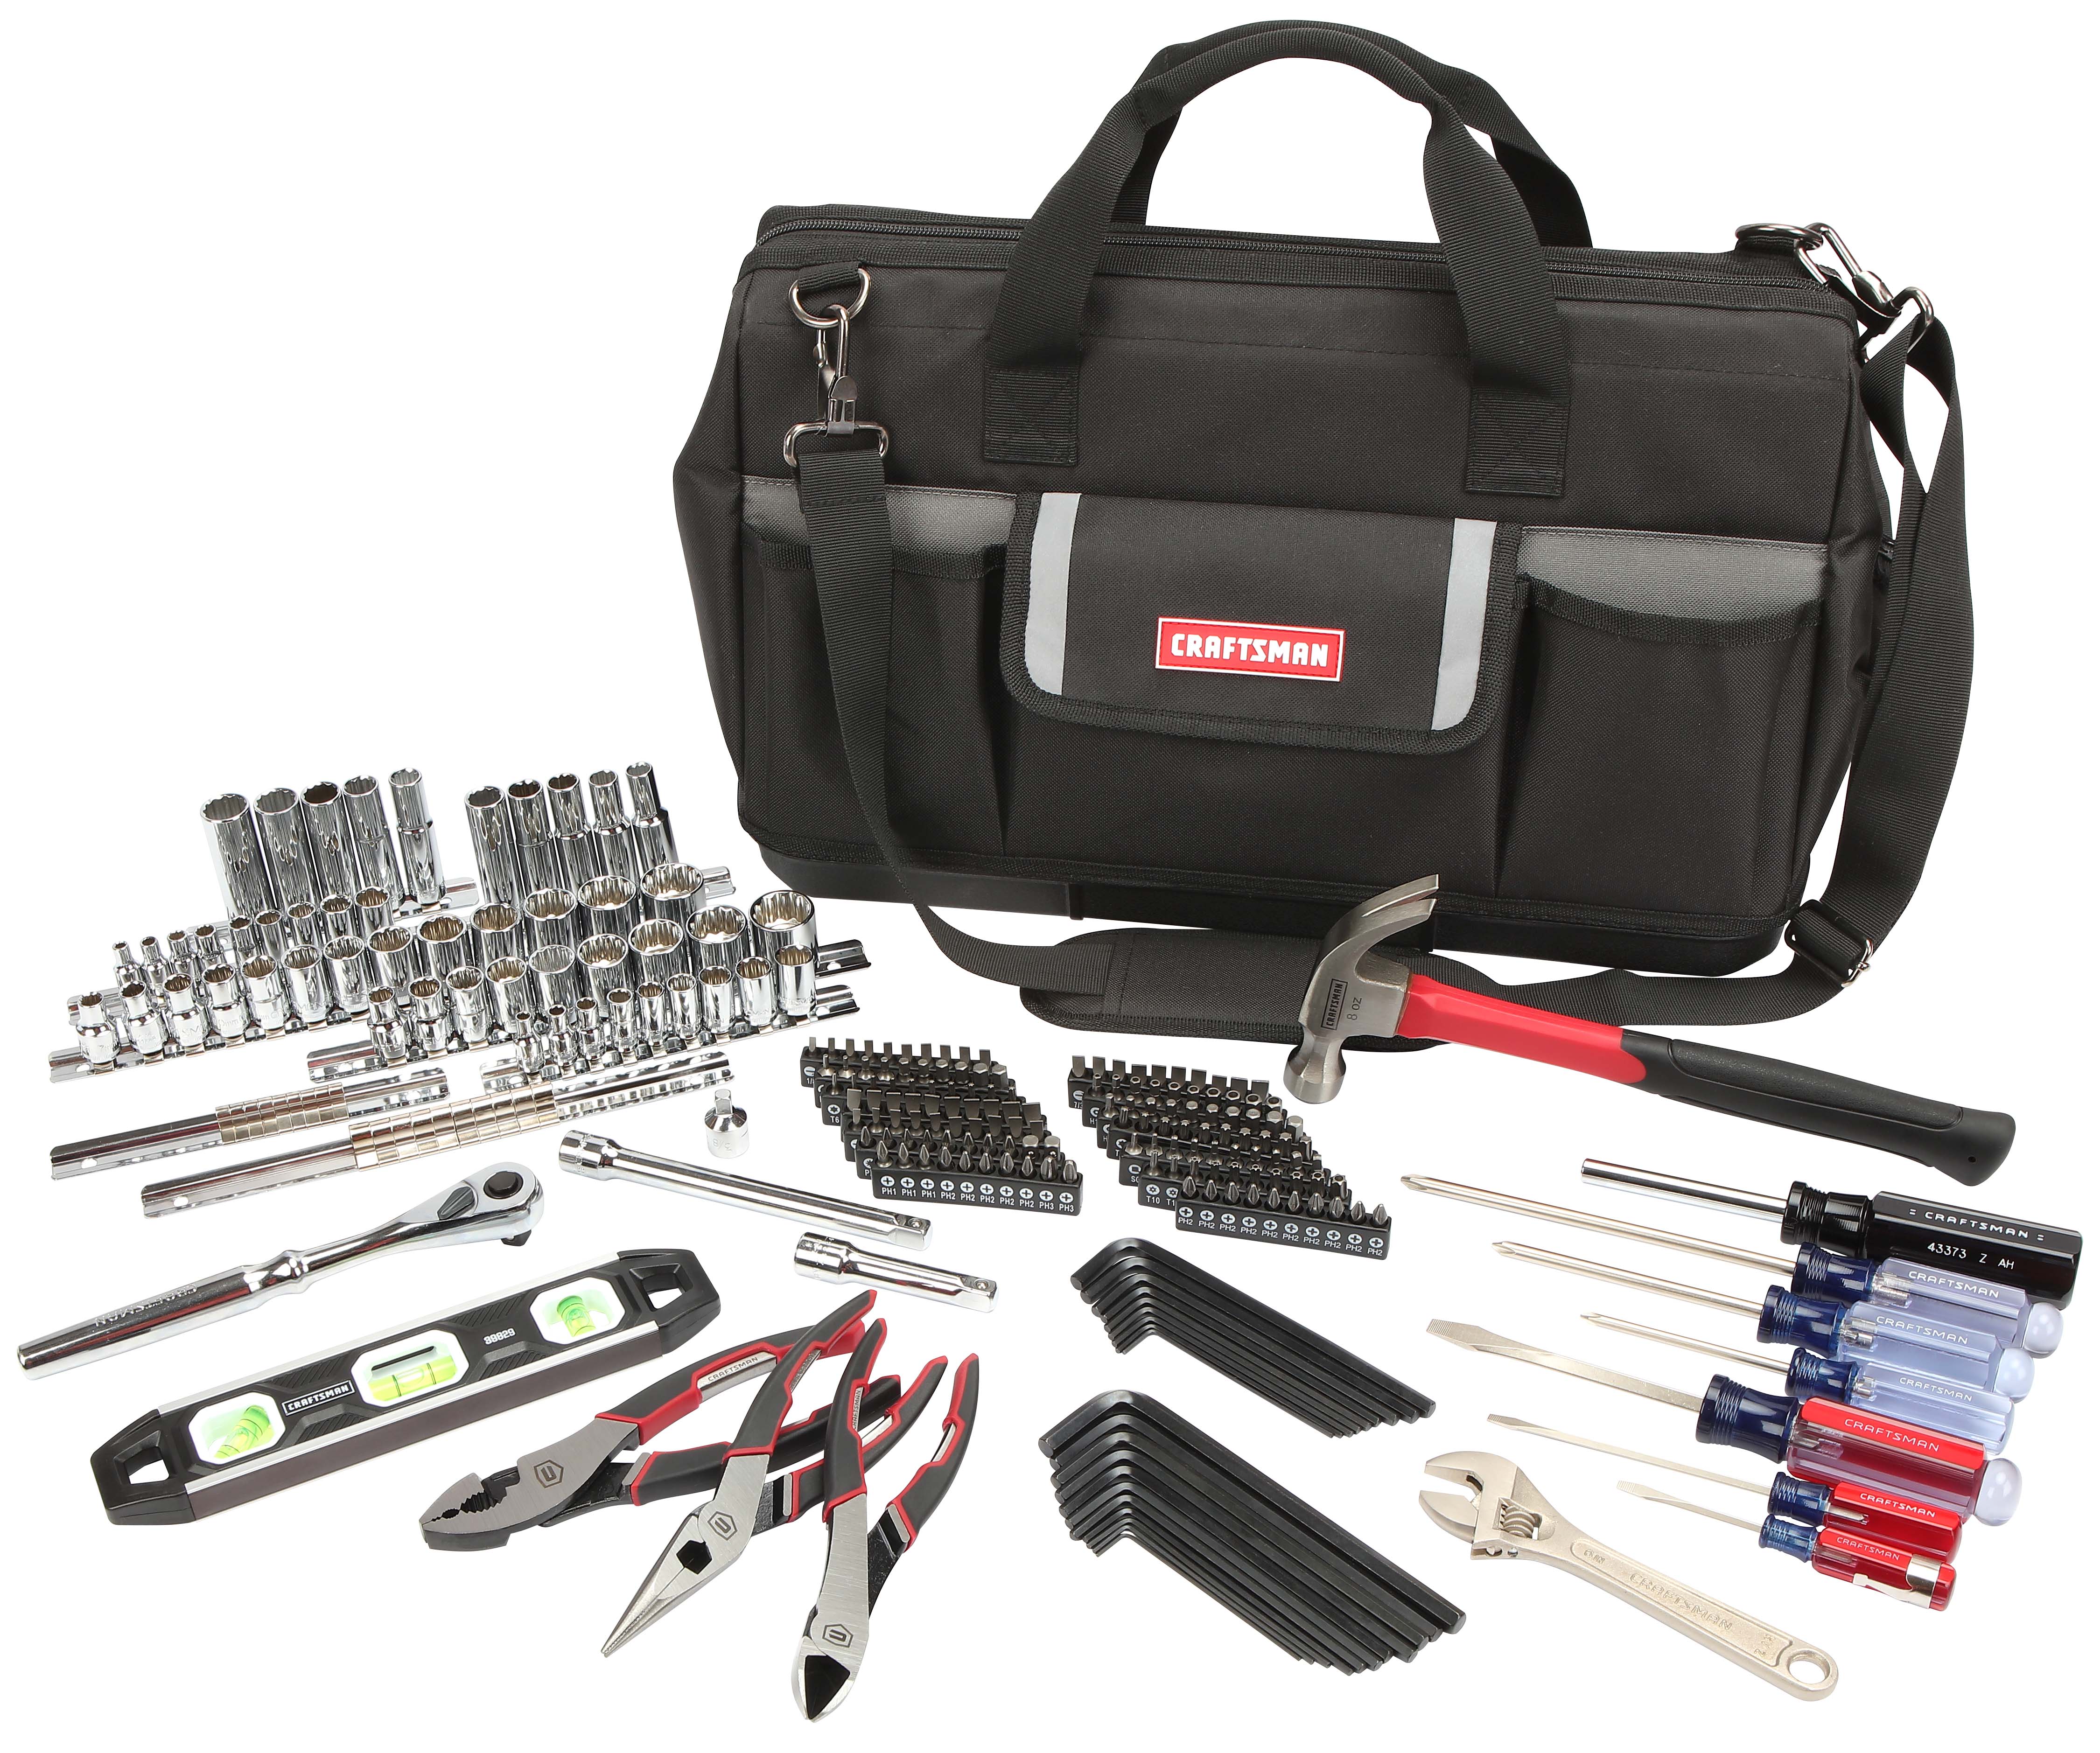 Craftsman 230-Piece Mechanic's Tool Set and Tool Bag